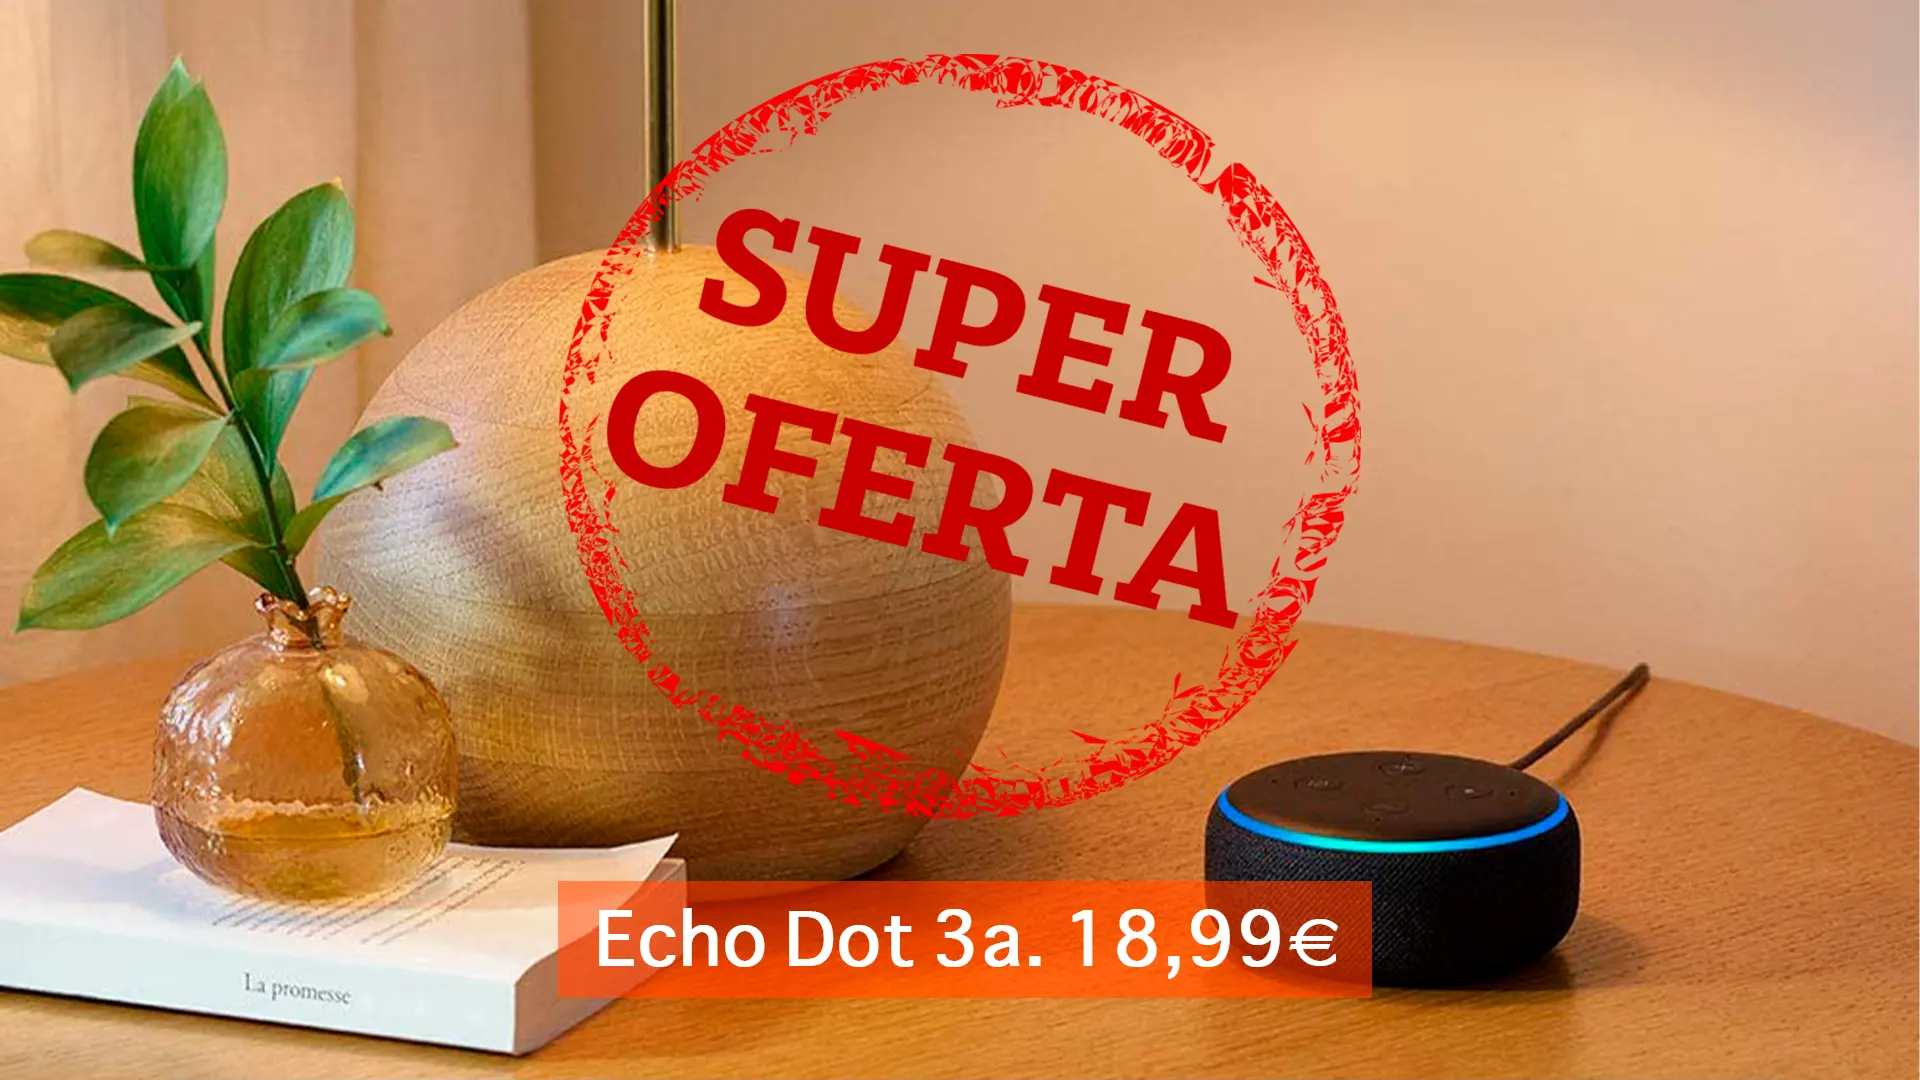 Espectacular oferta Echo Dot 3a. por 18,99€ precio histórico